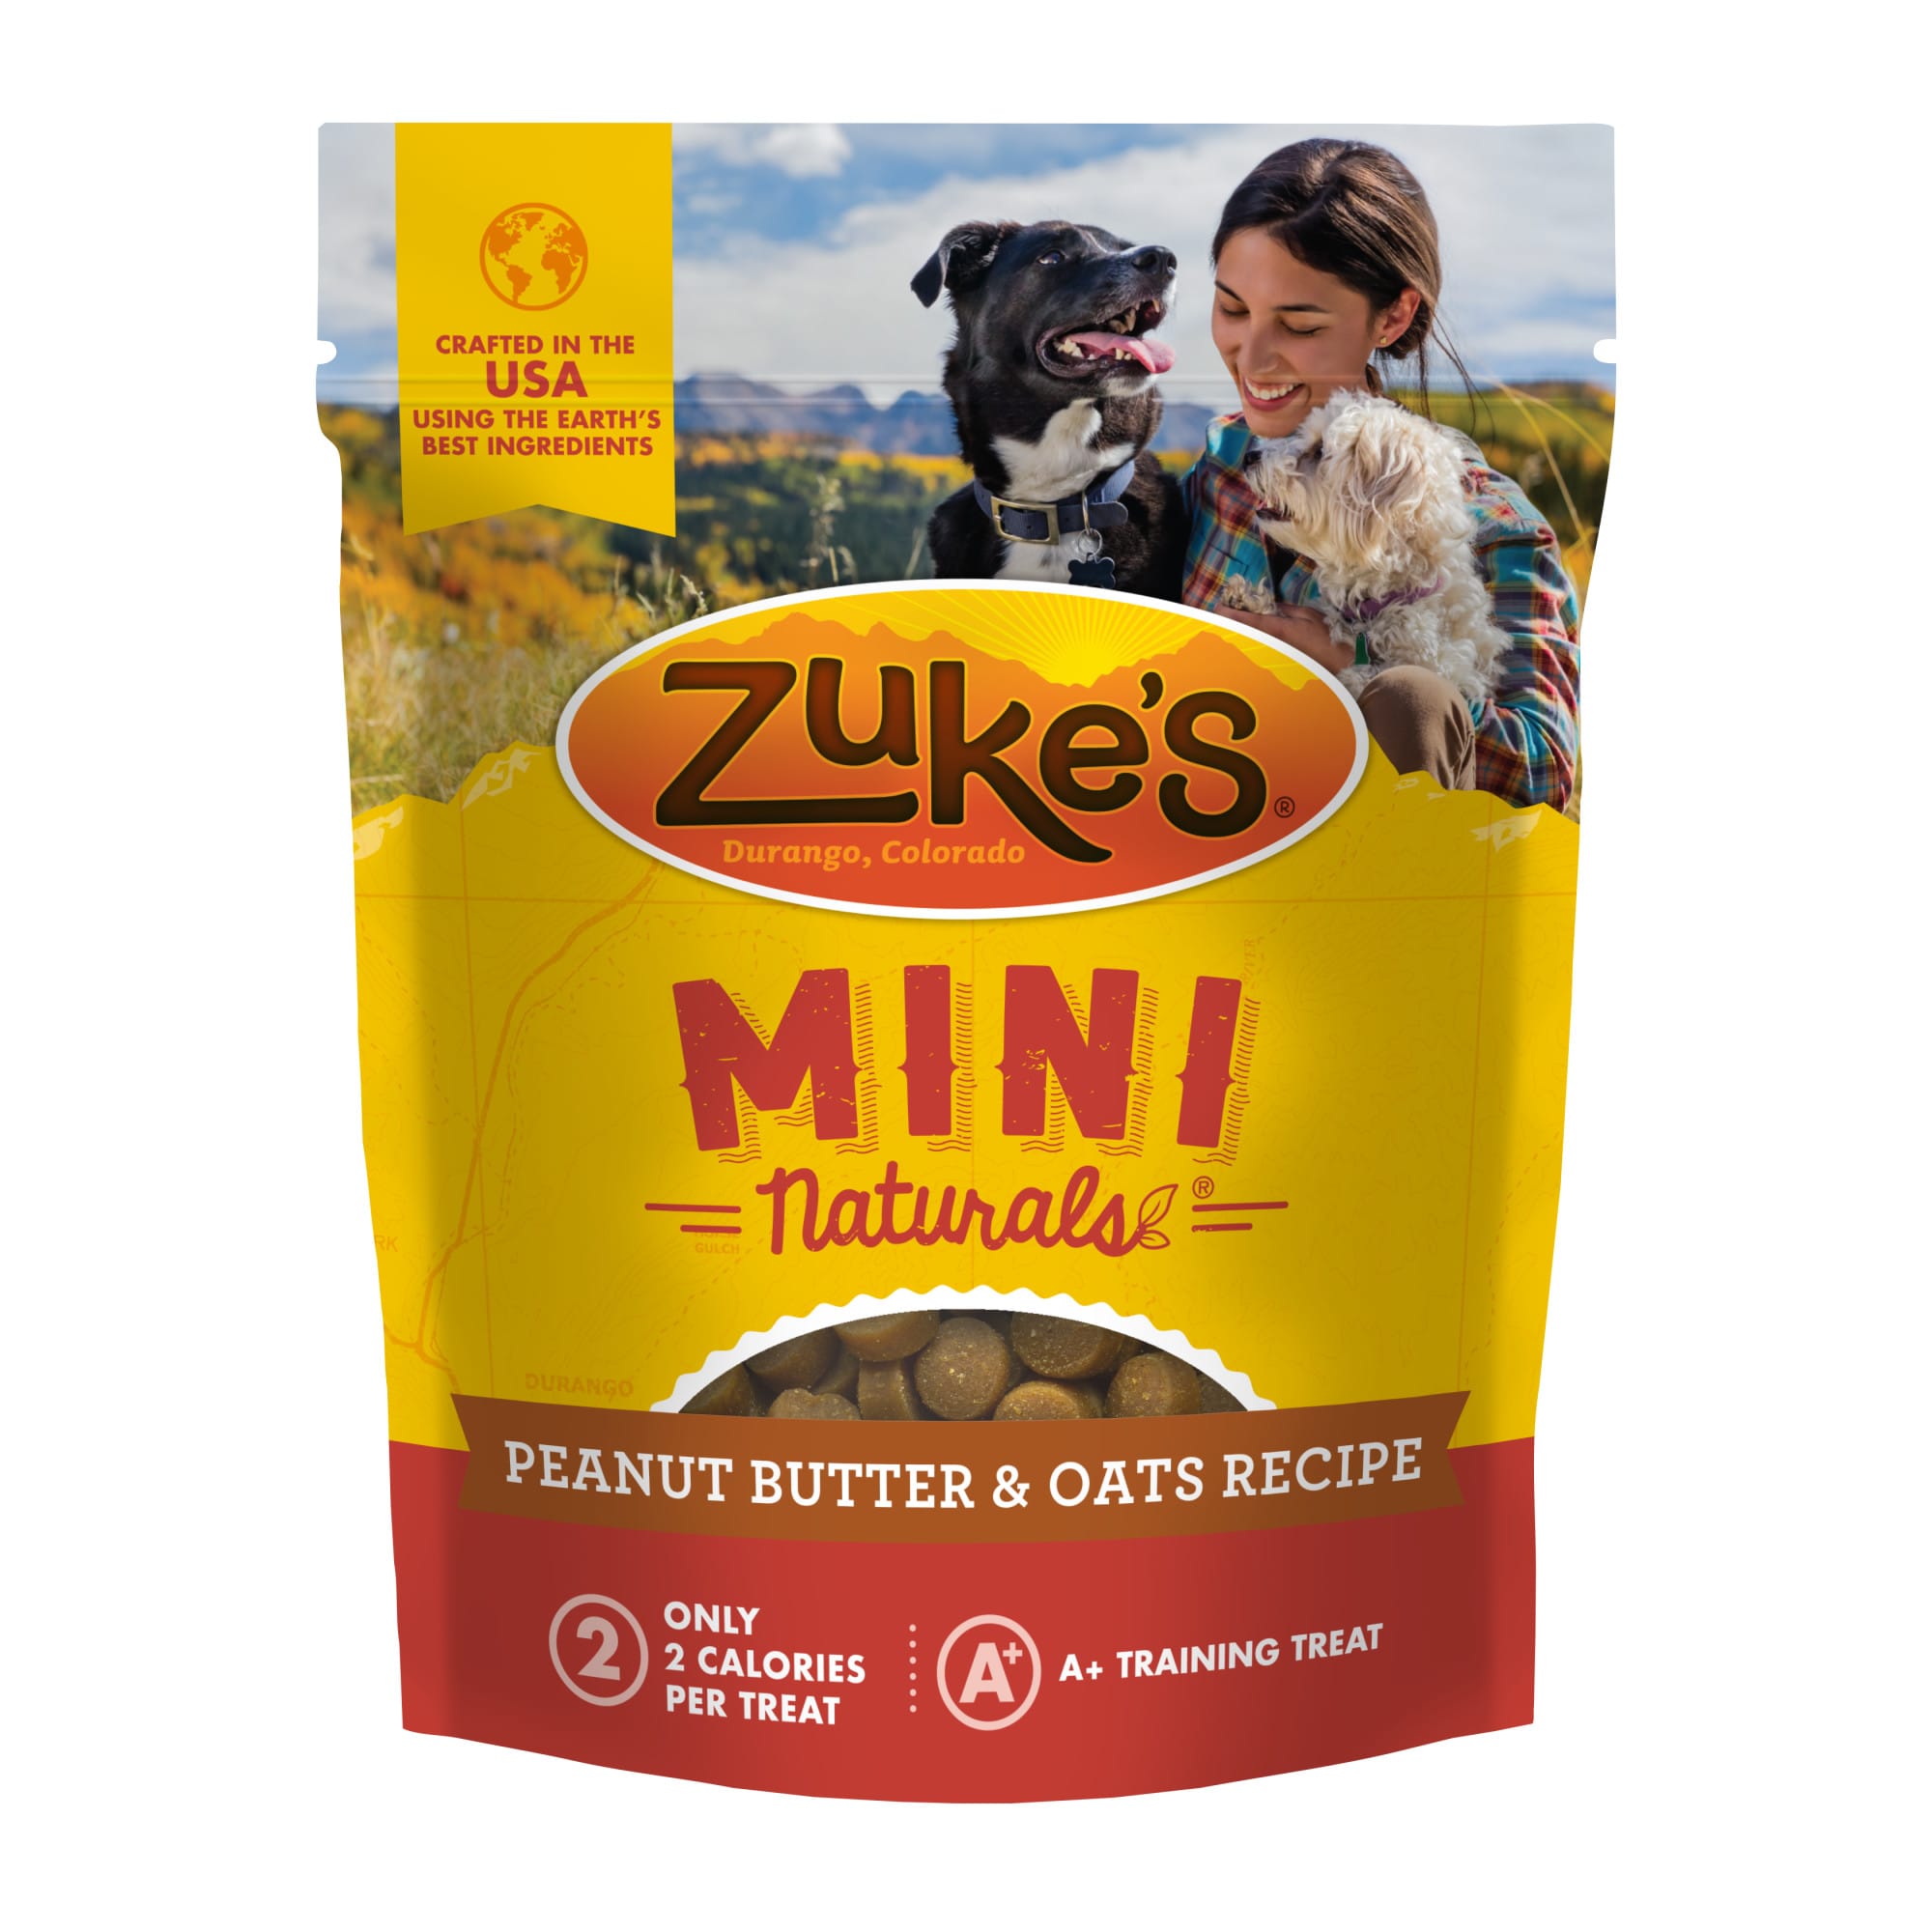 Zuke's treats